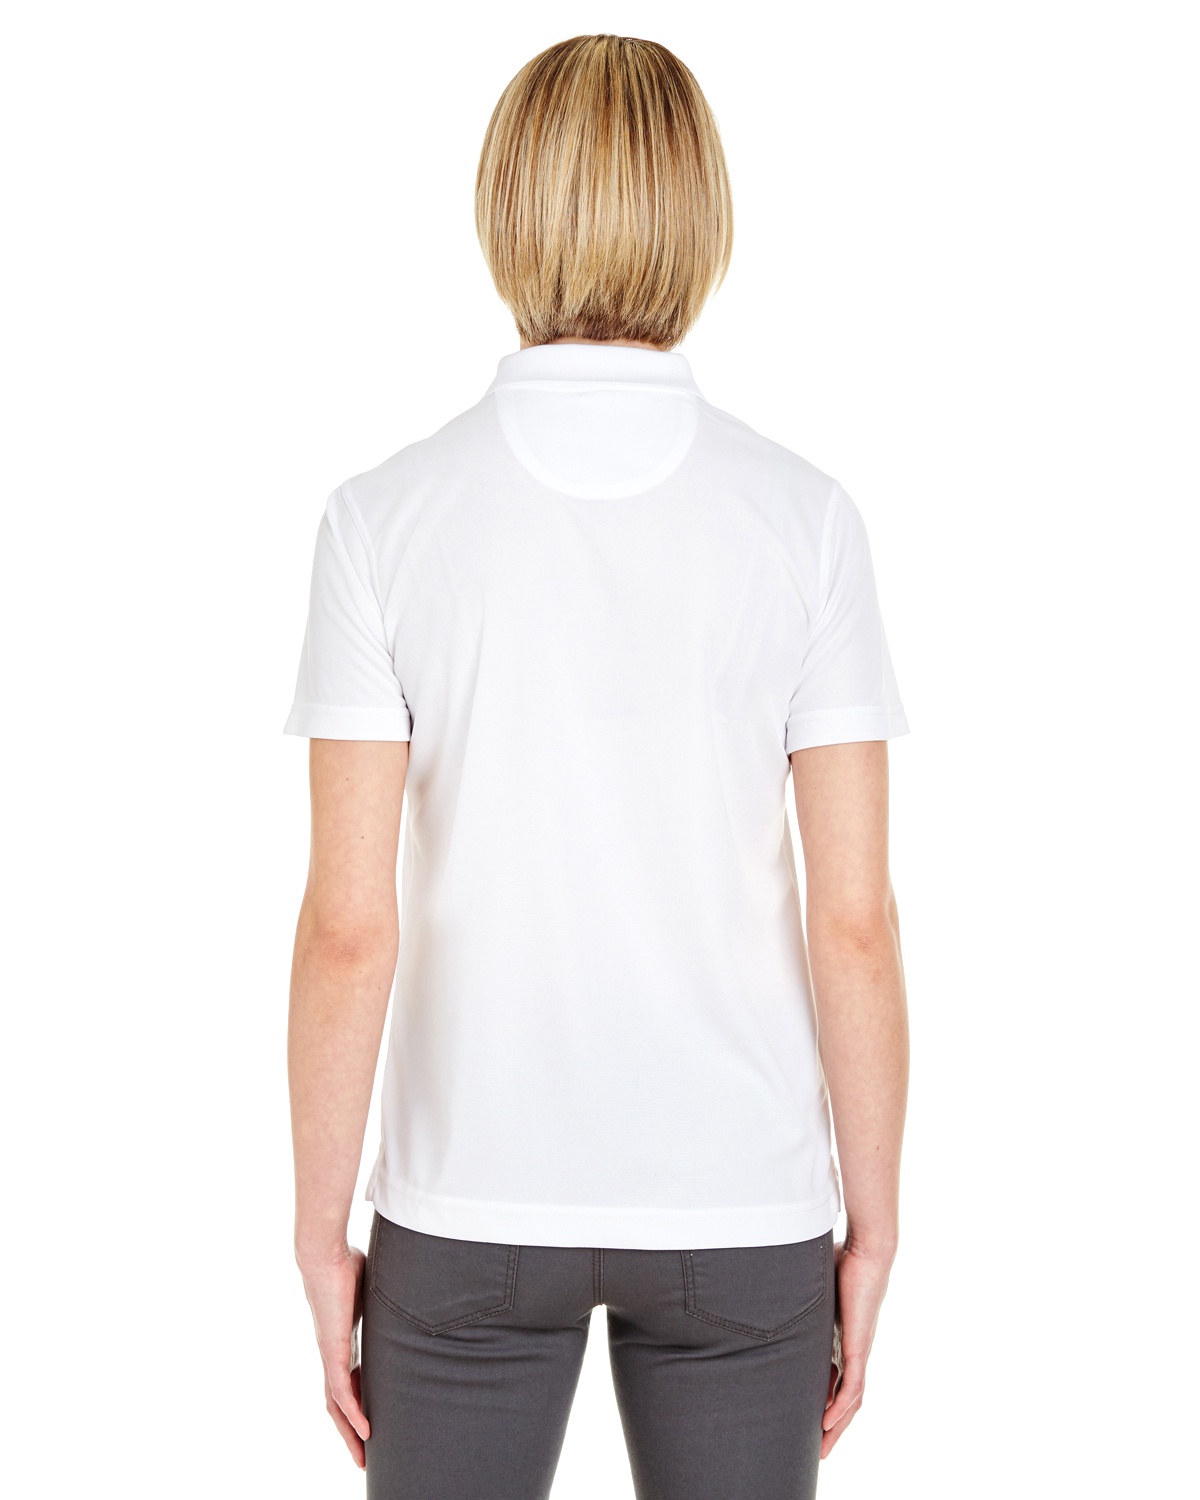 'UltraClub 8210L Ladies Cool & Dry Mesh Pique Polo Shirt'